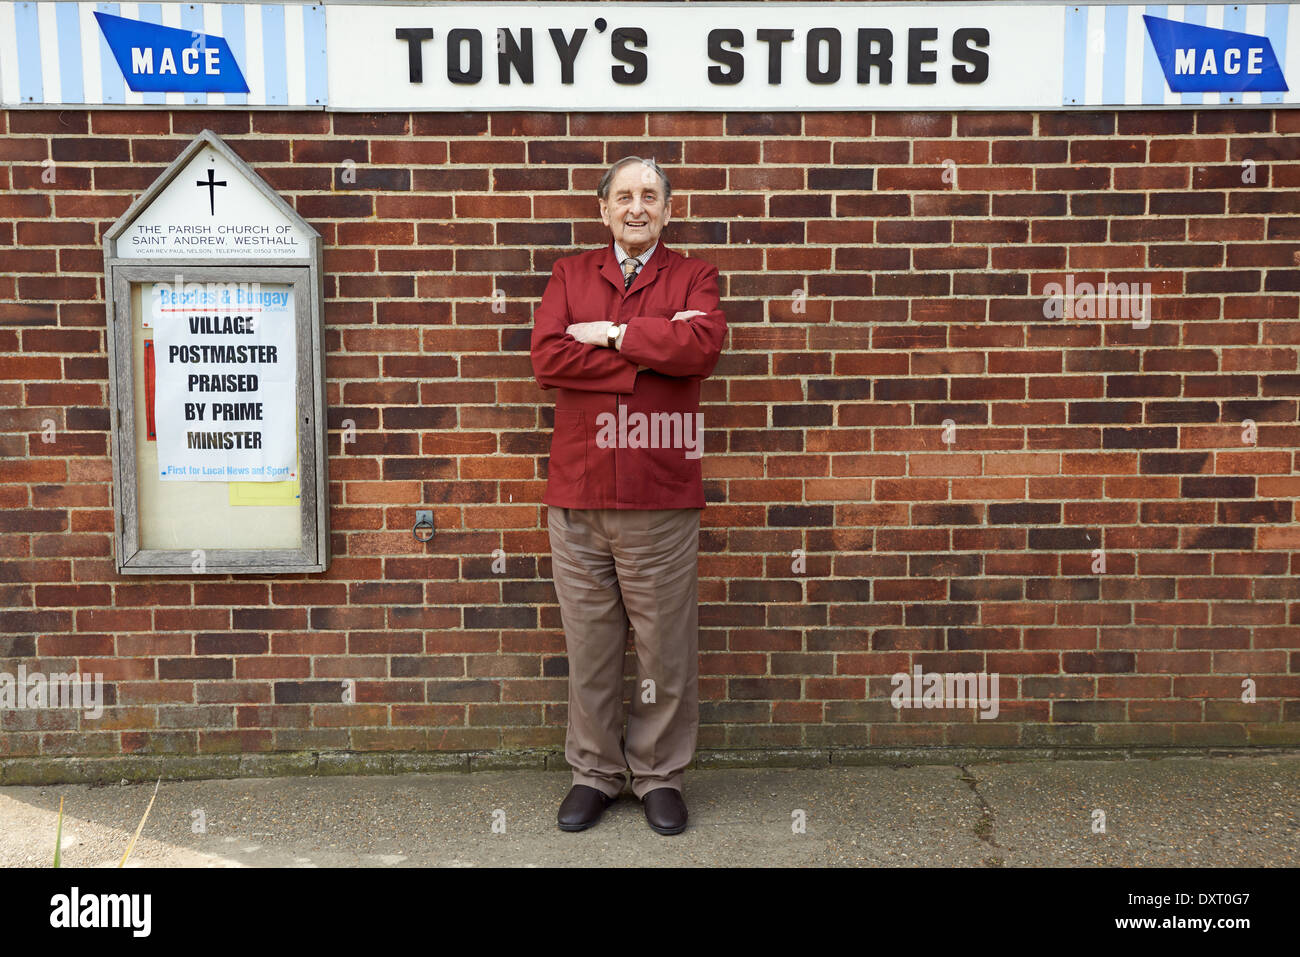 Premier maître Whatling Tony qui a exécuté le bureau de poste et magasin à Westhall, Suffolk depuis plus de 60 ans et a été loué par la PM. Banque D'Images